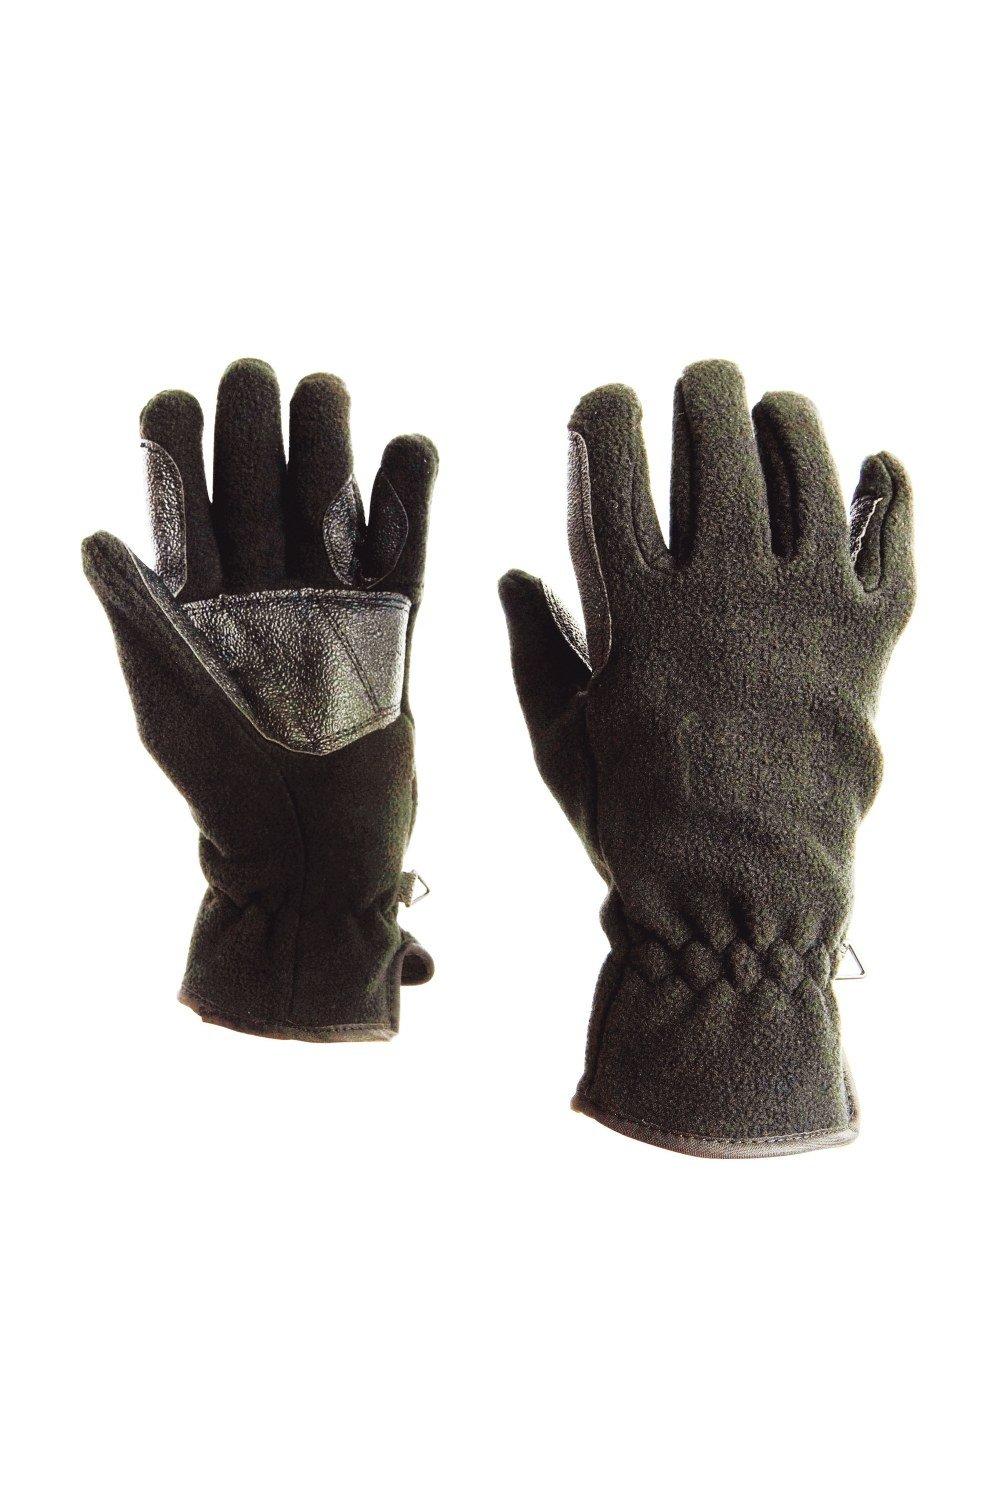 Флисовые перчатки для верховой езды Polar Dublin, черный перчатки atmosphere fresh биколор размер m усиленные пальцы пвх